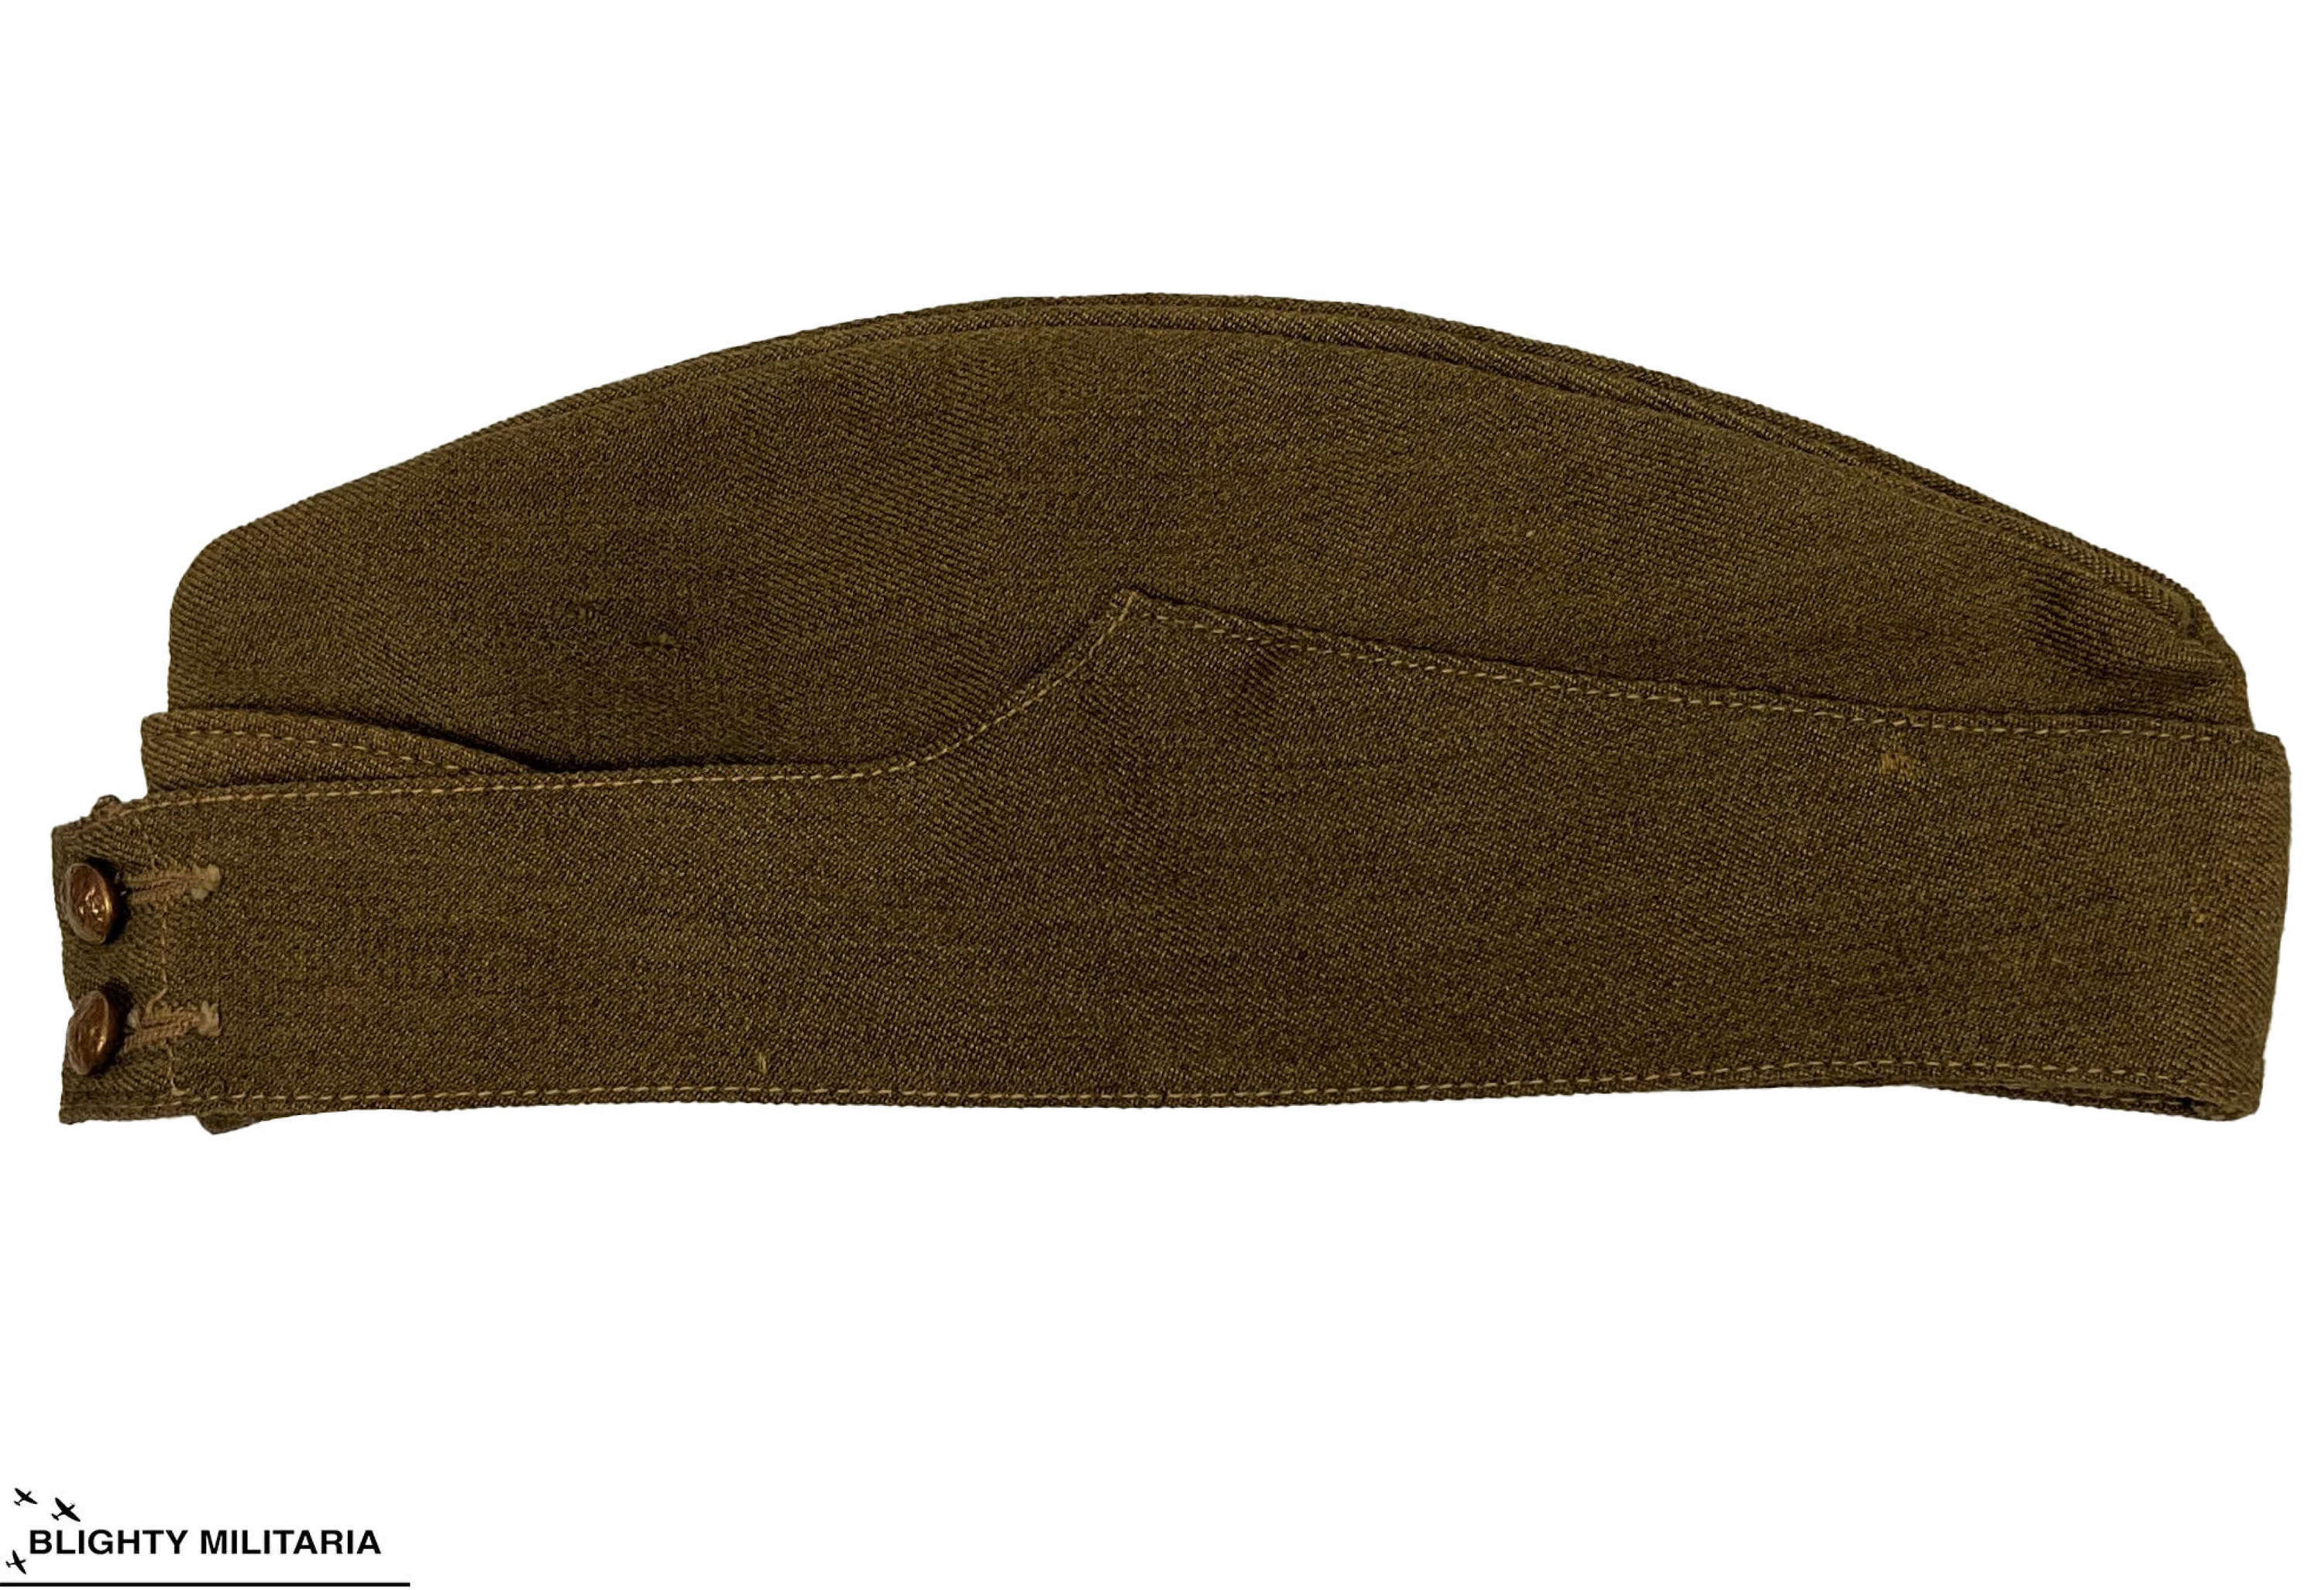 Original 1942 Dated British Army Field Service Cap